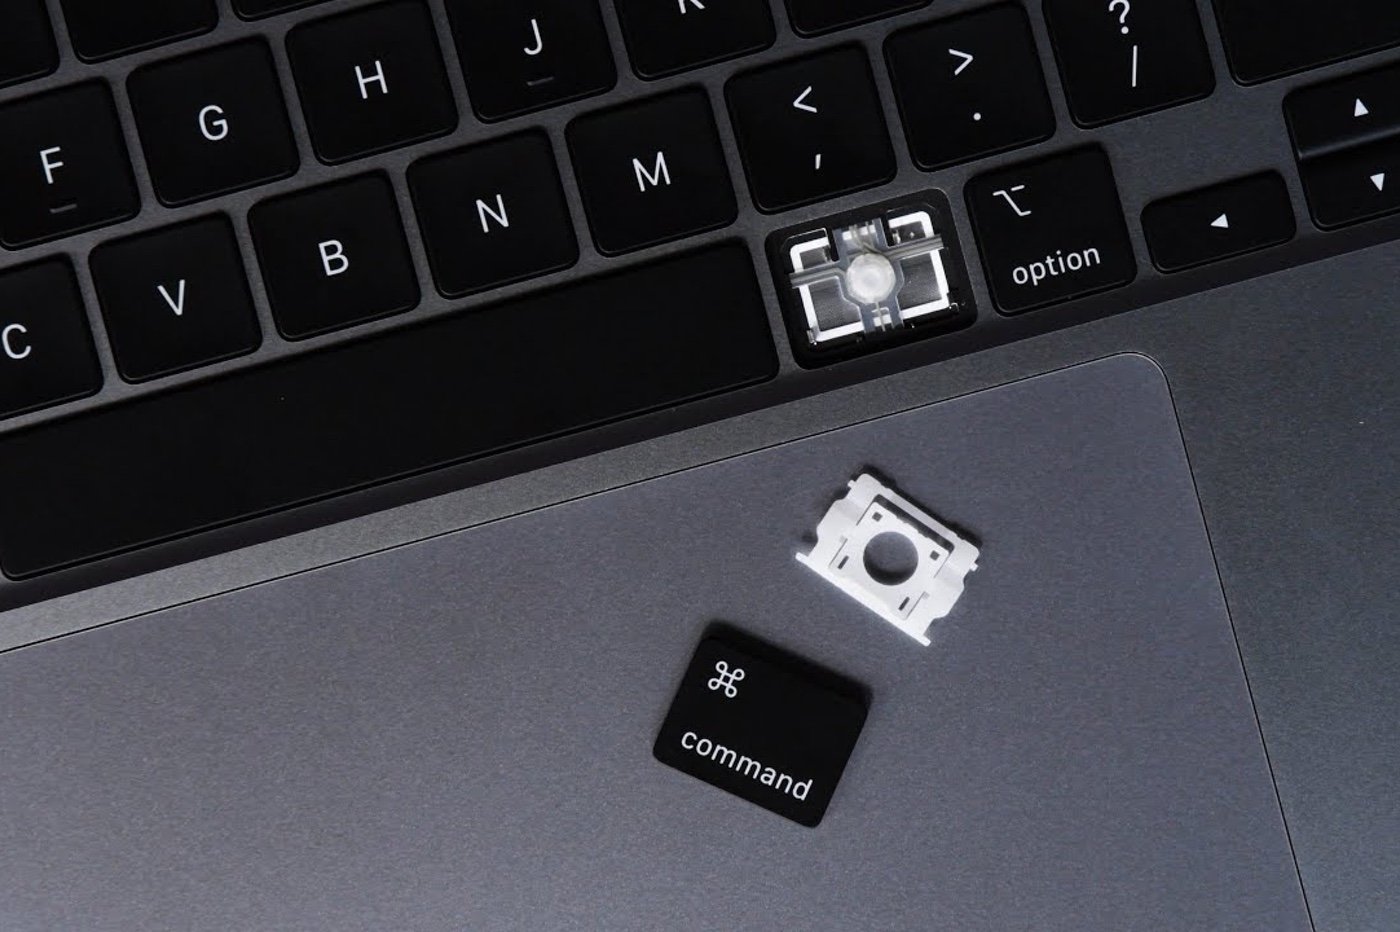 Le MacBook Pro 16 pouces démonté, révèle un clavier pas si nouveau que ça